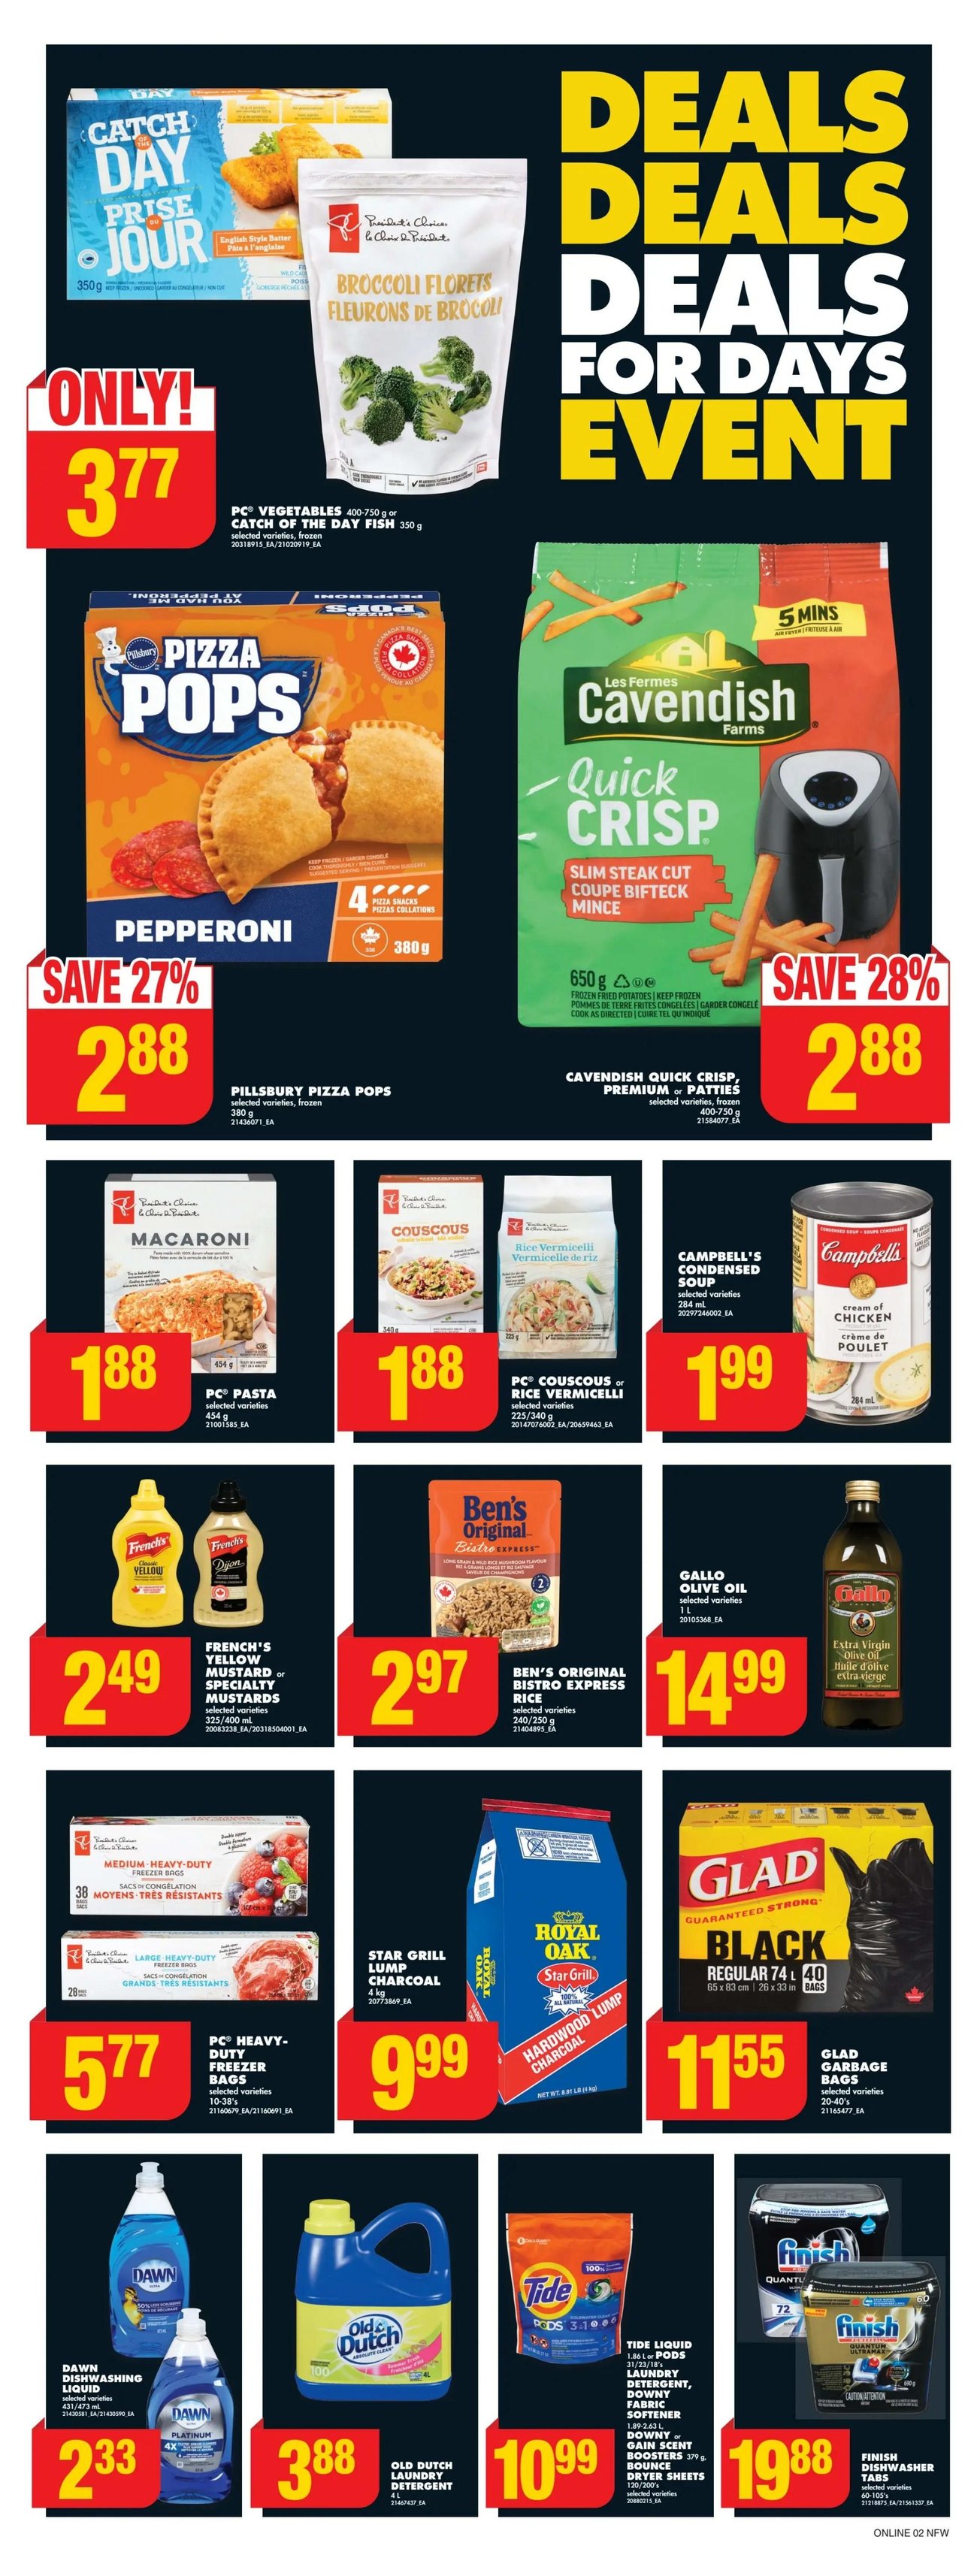 No Frills (Western Canada, Northern Ontario) - Weekly Flyer Specials - Page 8